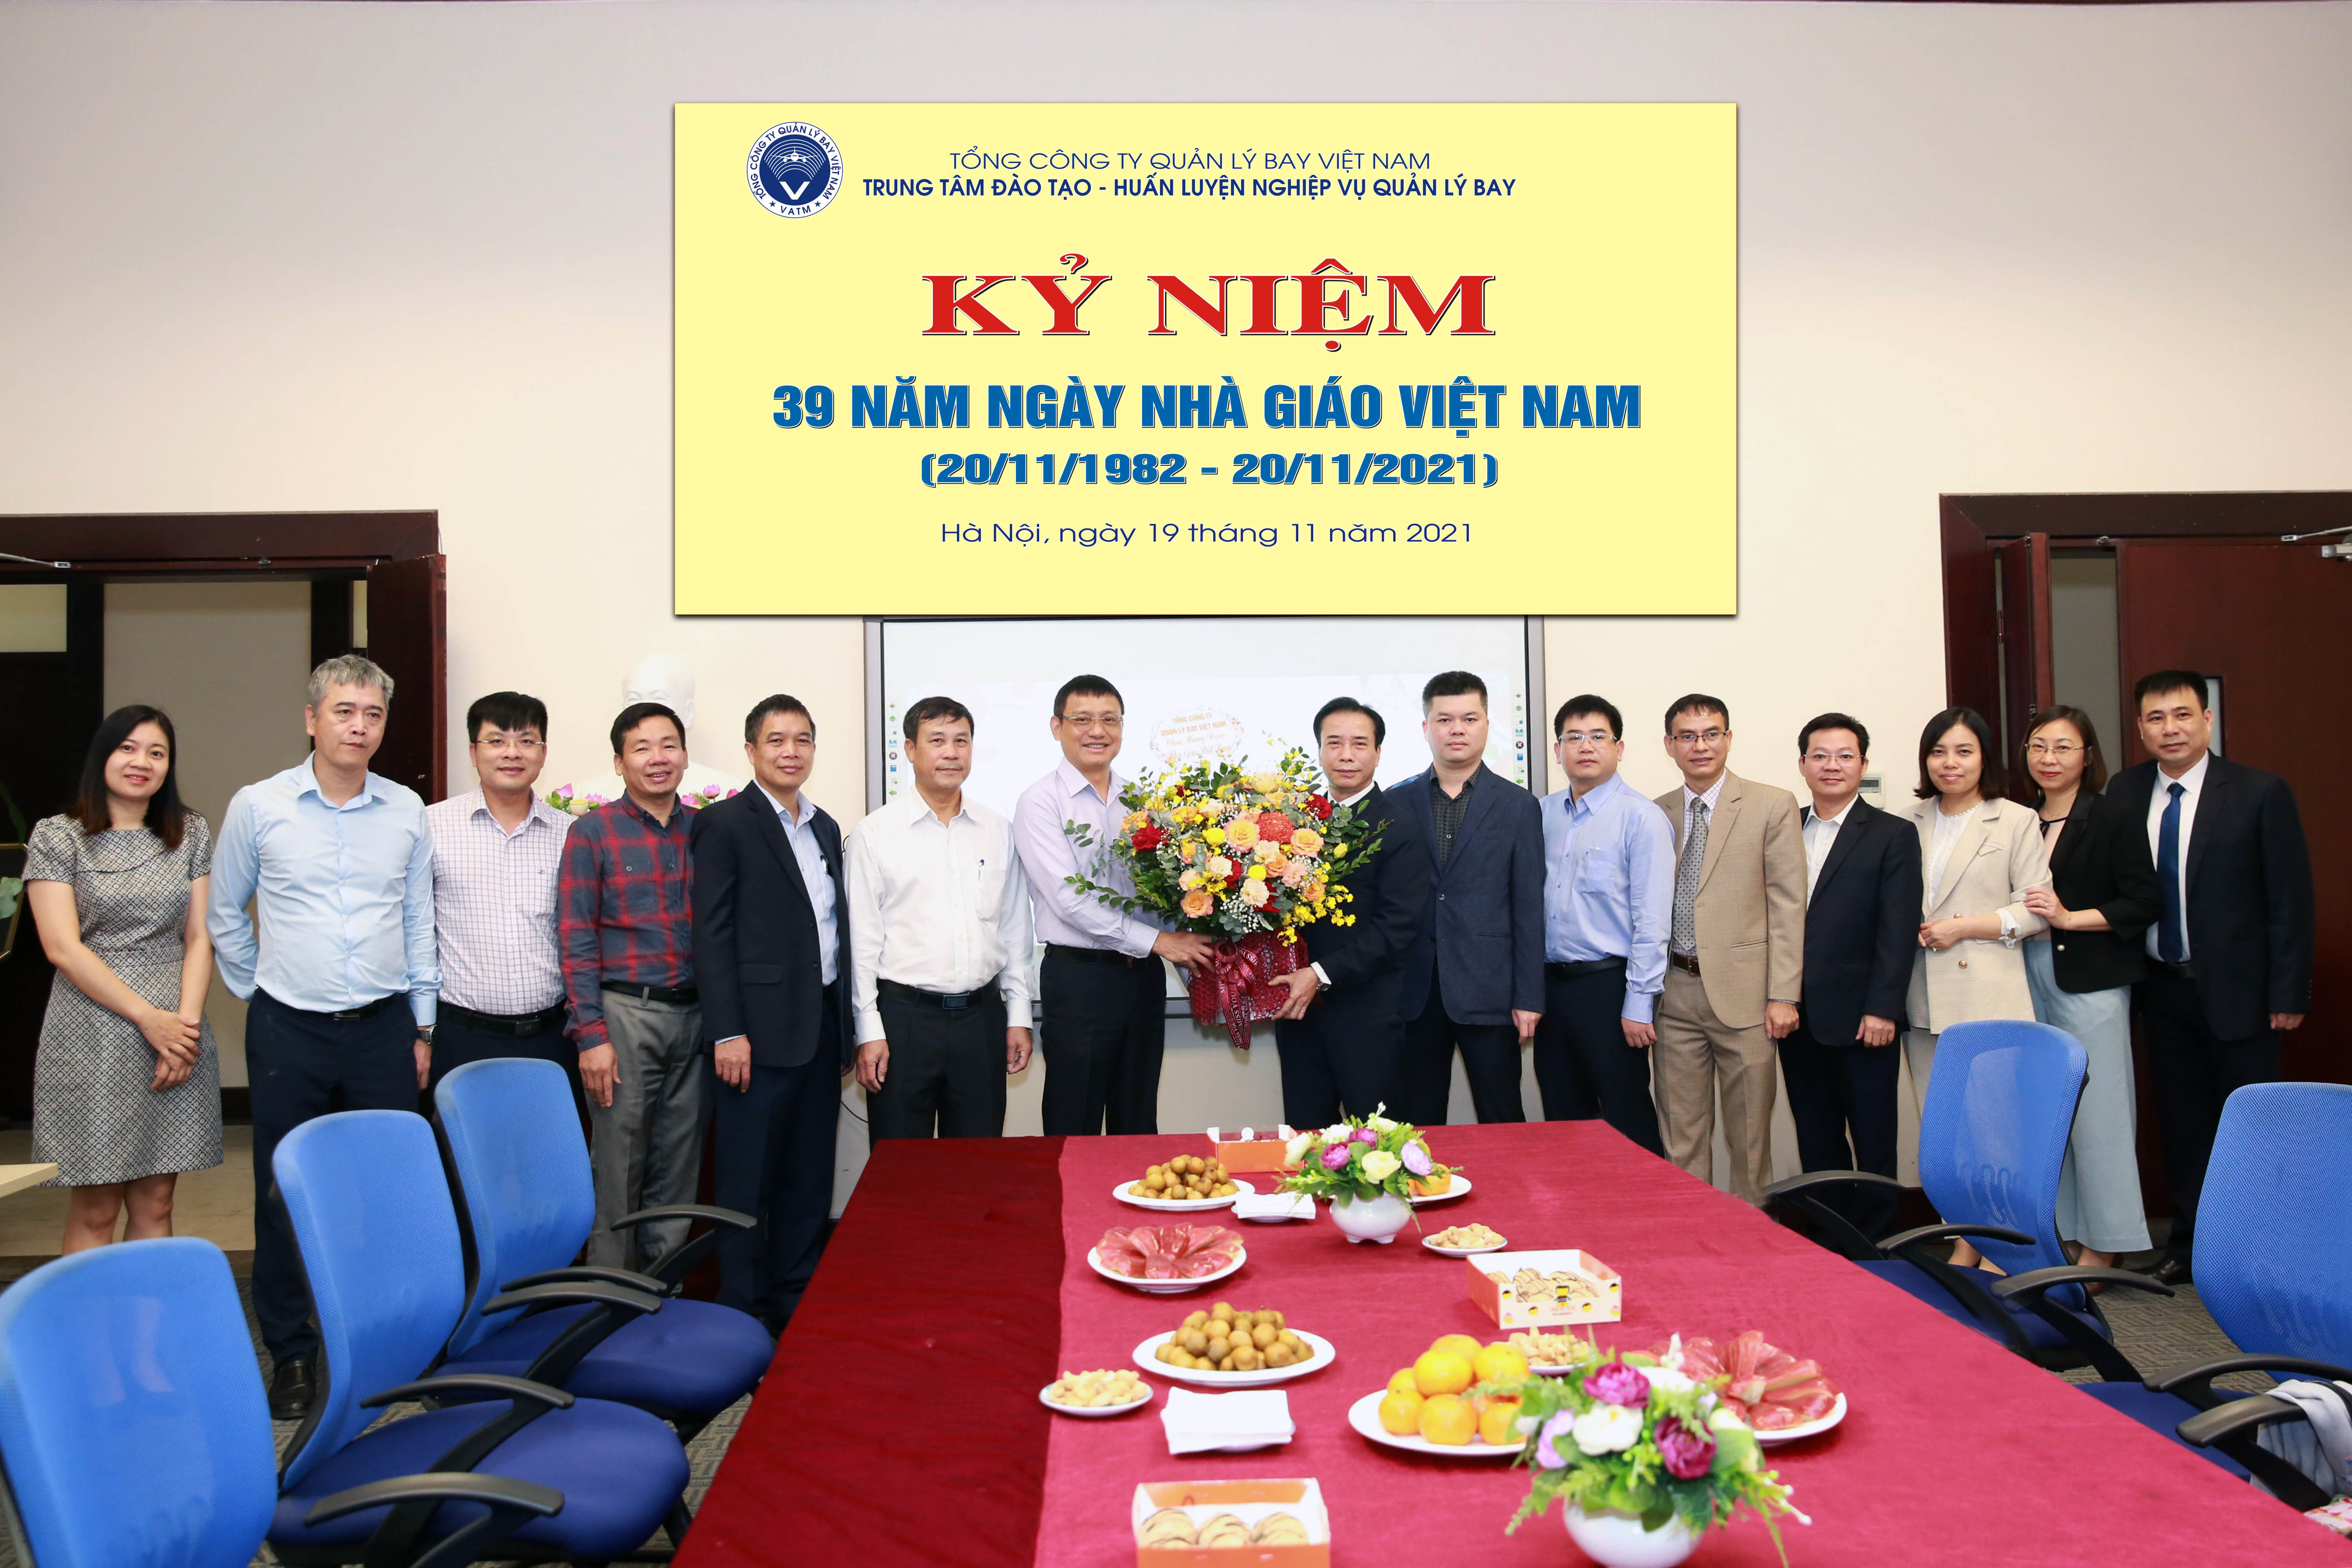 Tổng công ty Quản lý bay Việt Nam chúc mừng Ngày Nhà giáo Việt Nam